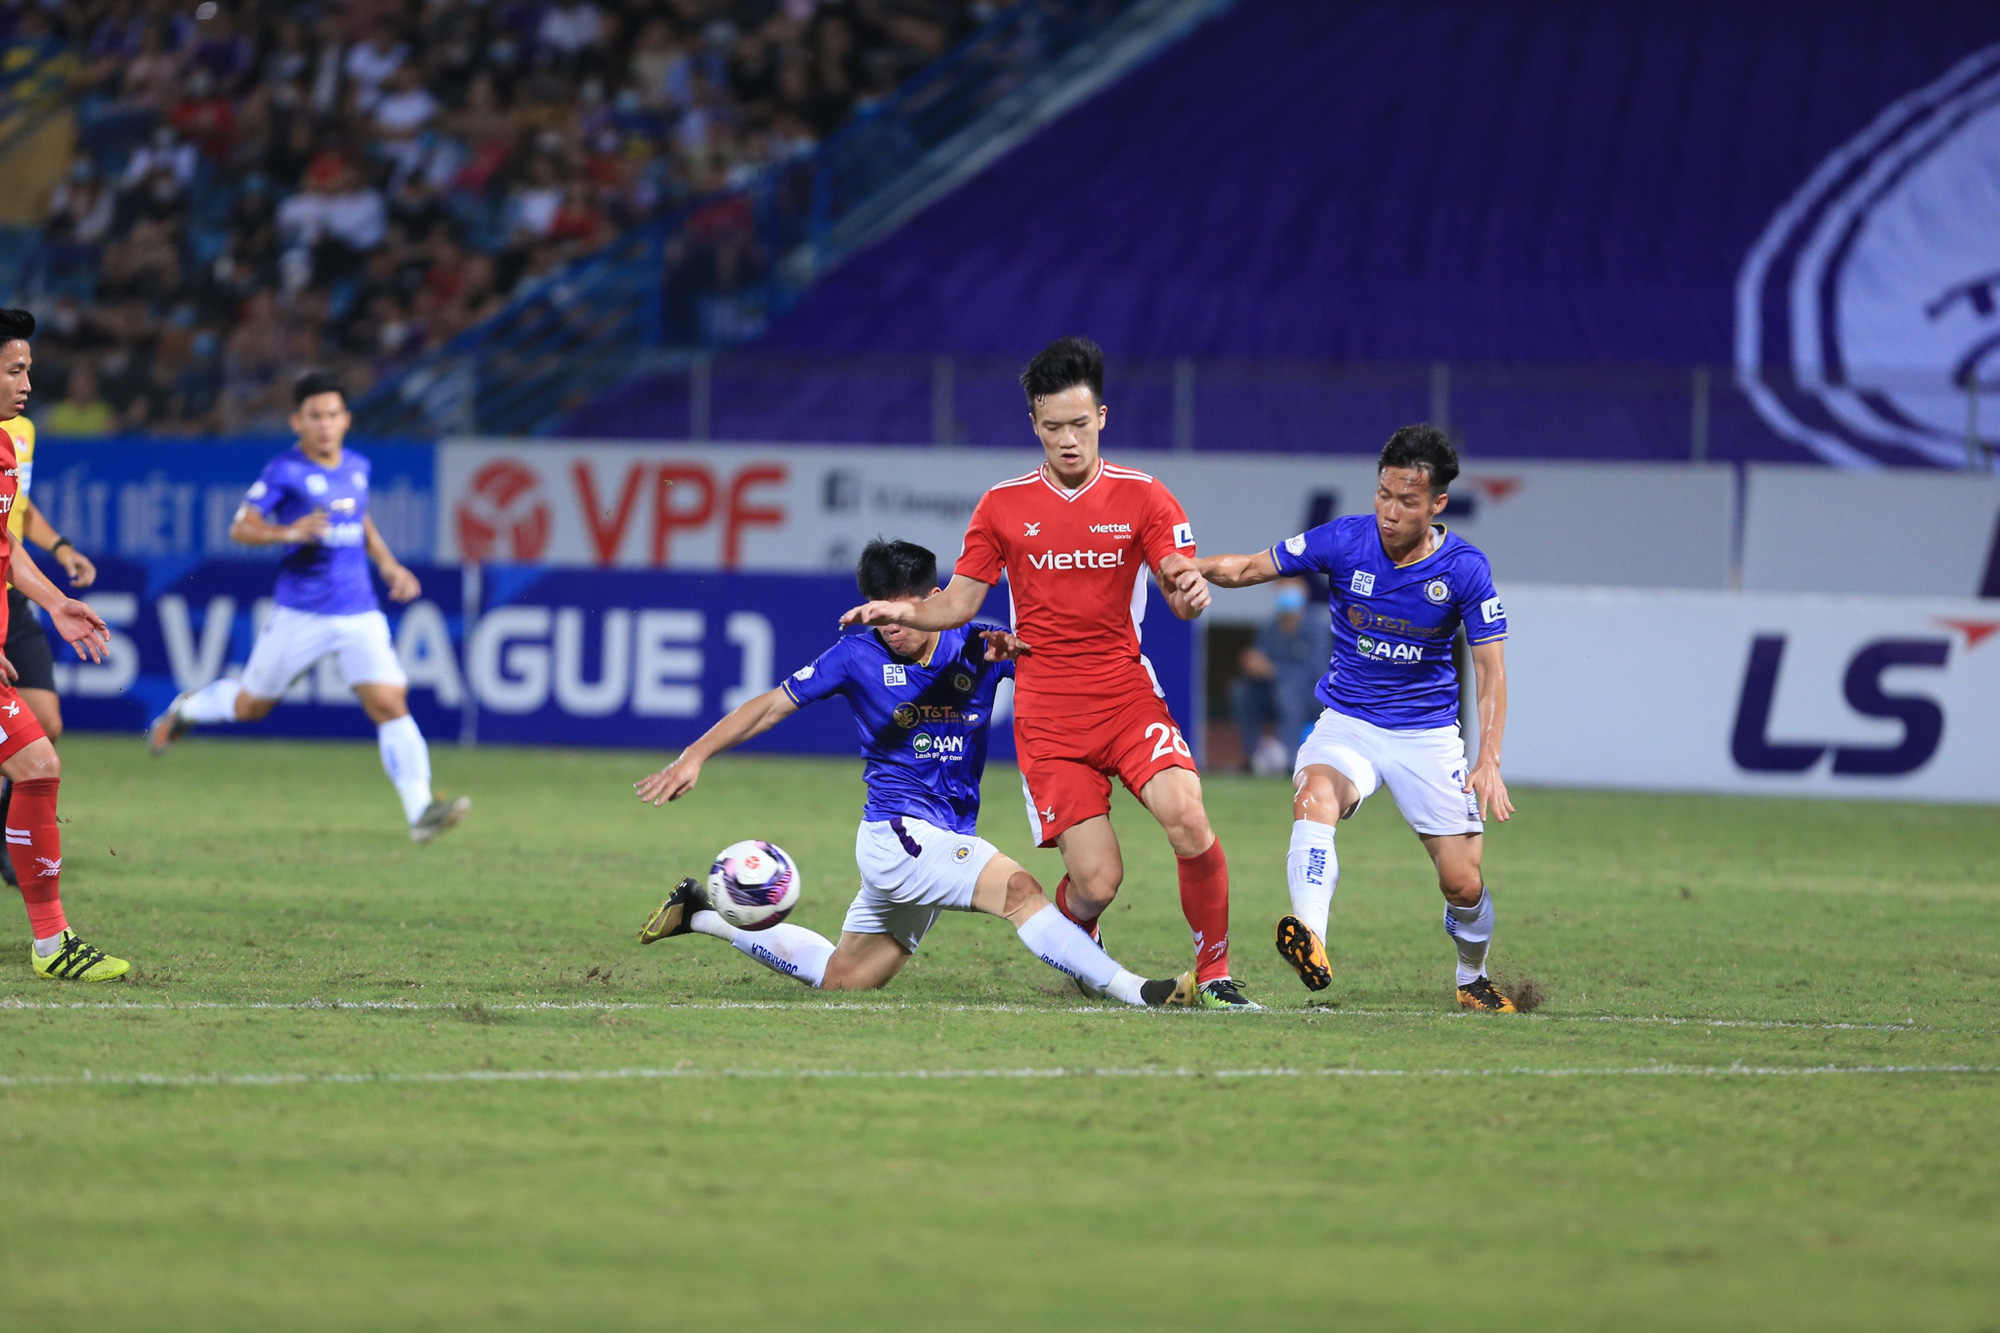 4 thủ môn Hà Nội FC bị nhiễm Covid-19, hoãn trận derby Thủ đô V.League 2022 - Ảnh 1.